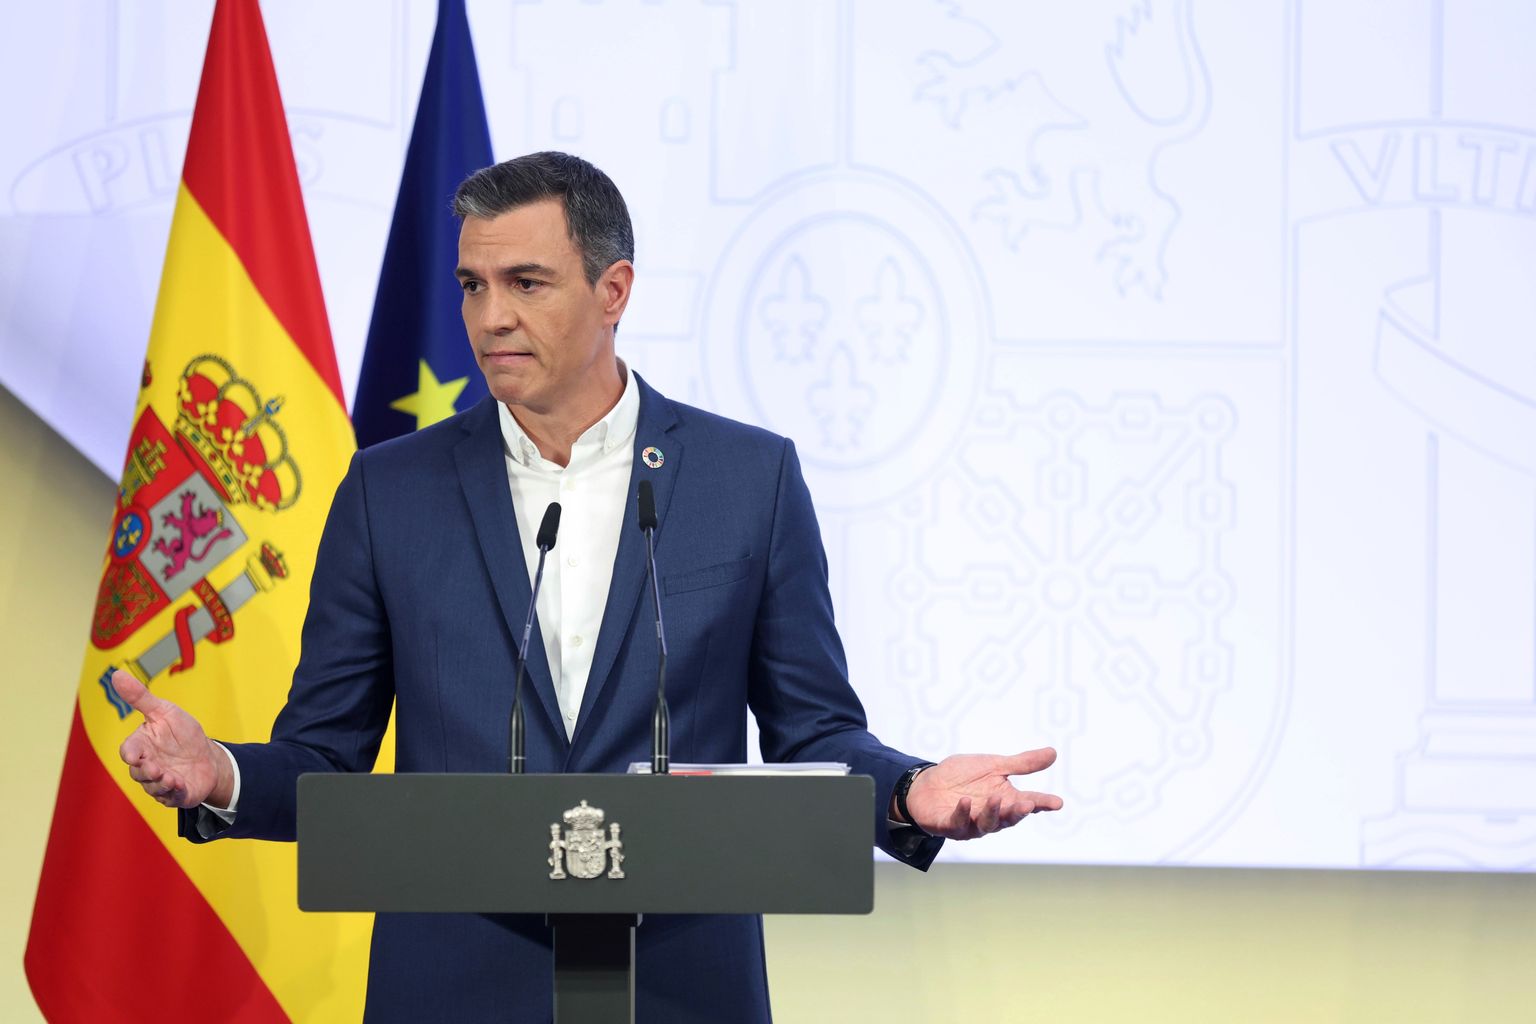 Lipsuta Hispaania peaminister Pedro Sánchez tegi kontoritöötajatele üleskutse lipsud varna jätta.